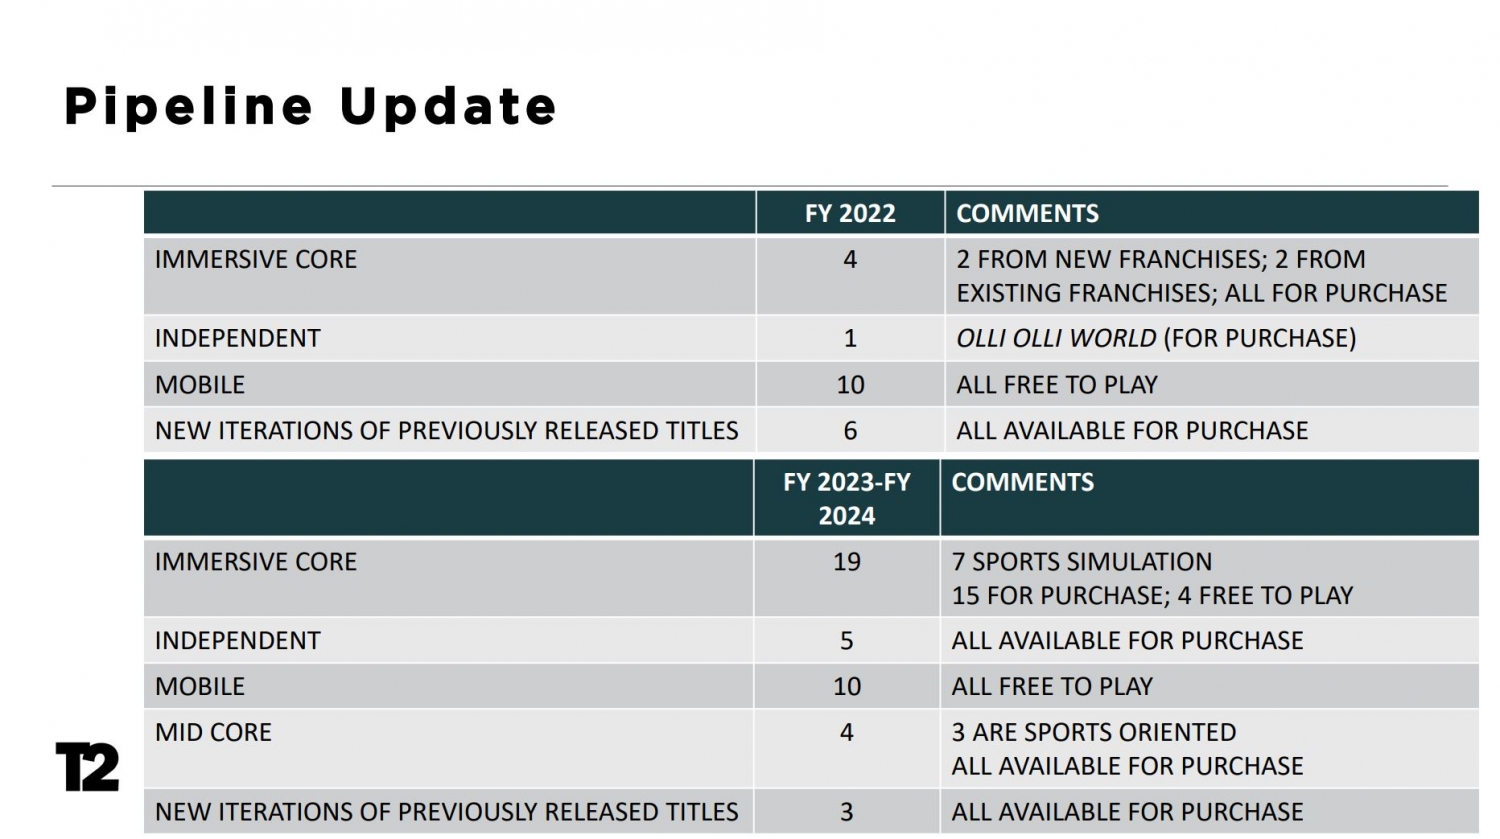 Relatório da Take Two sugere lançamento do GTA 6 em 2024